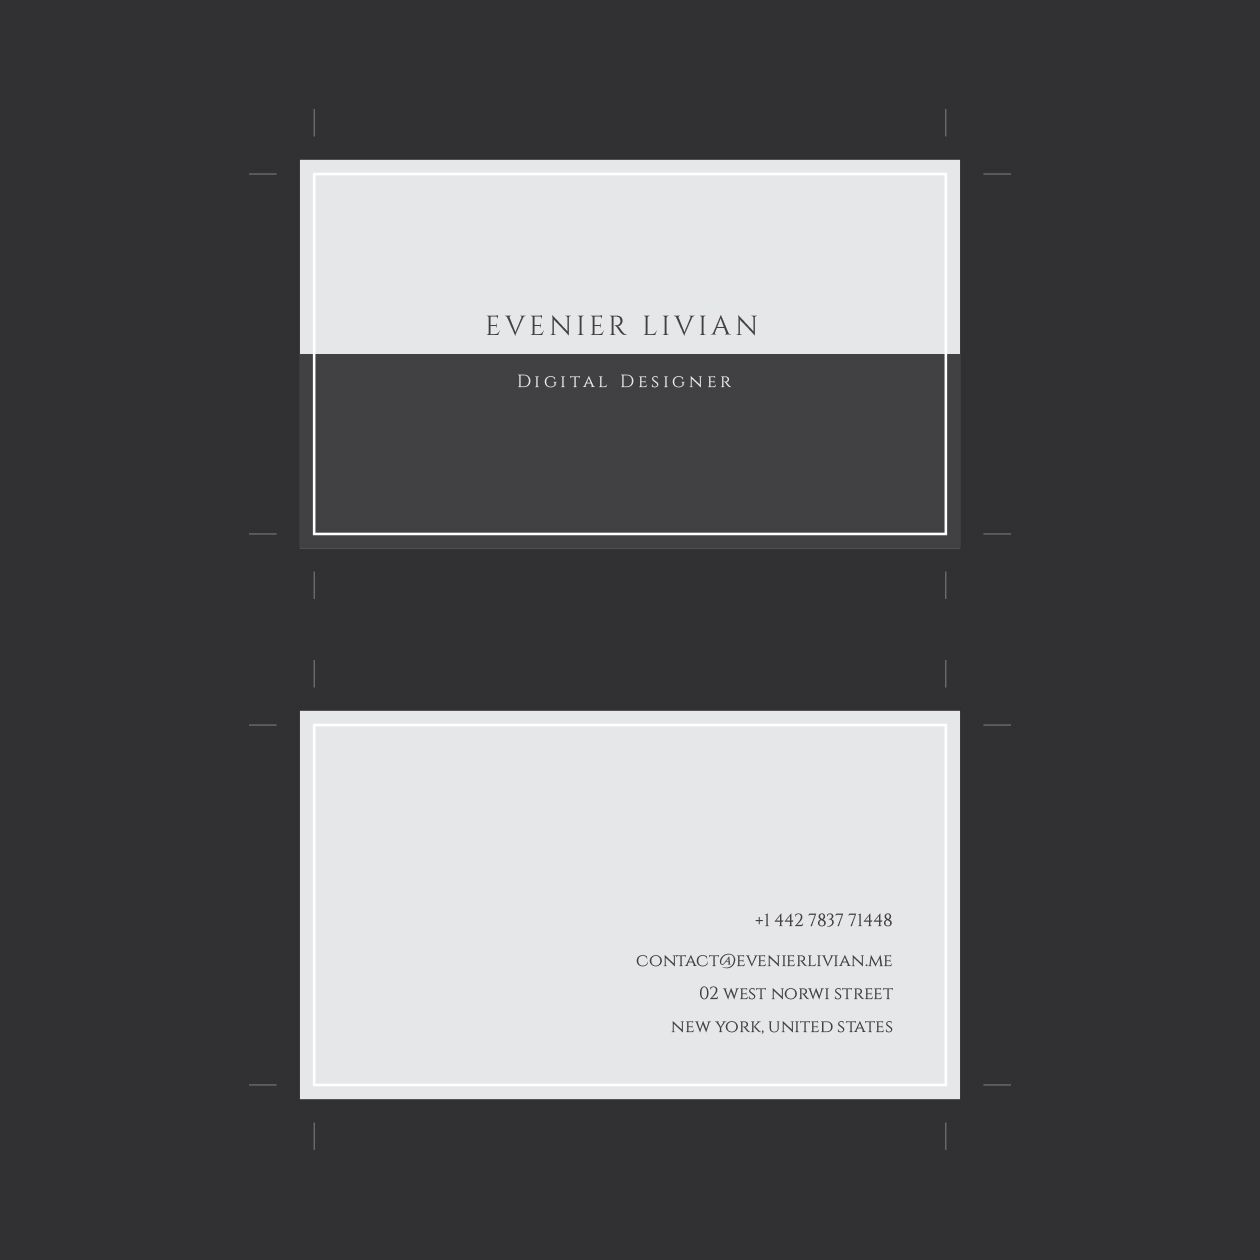 极简主义风格企业名片设计模板 Minimal Business Card Template插图2